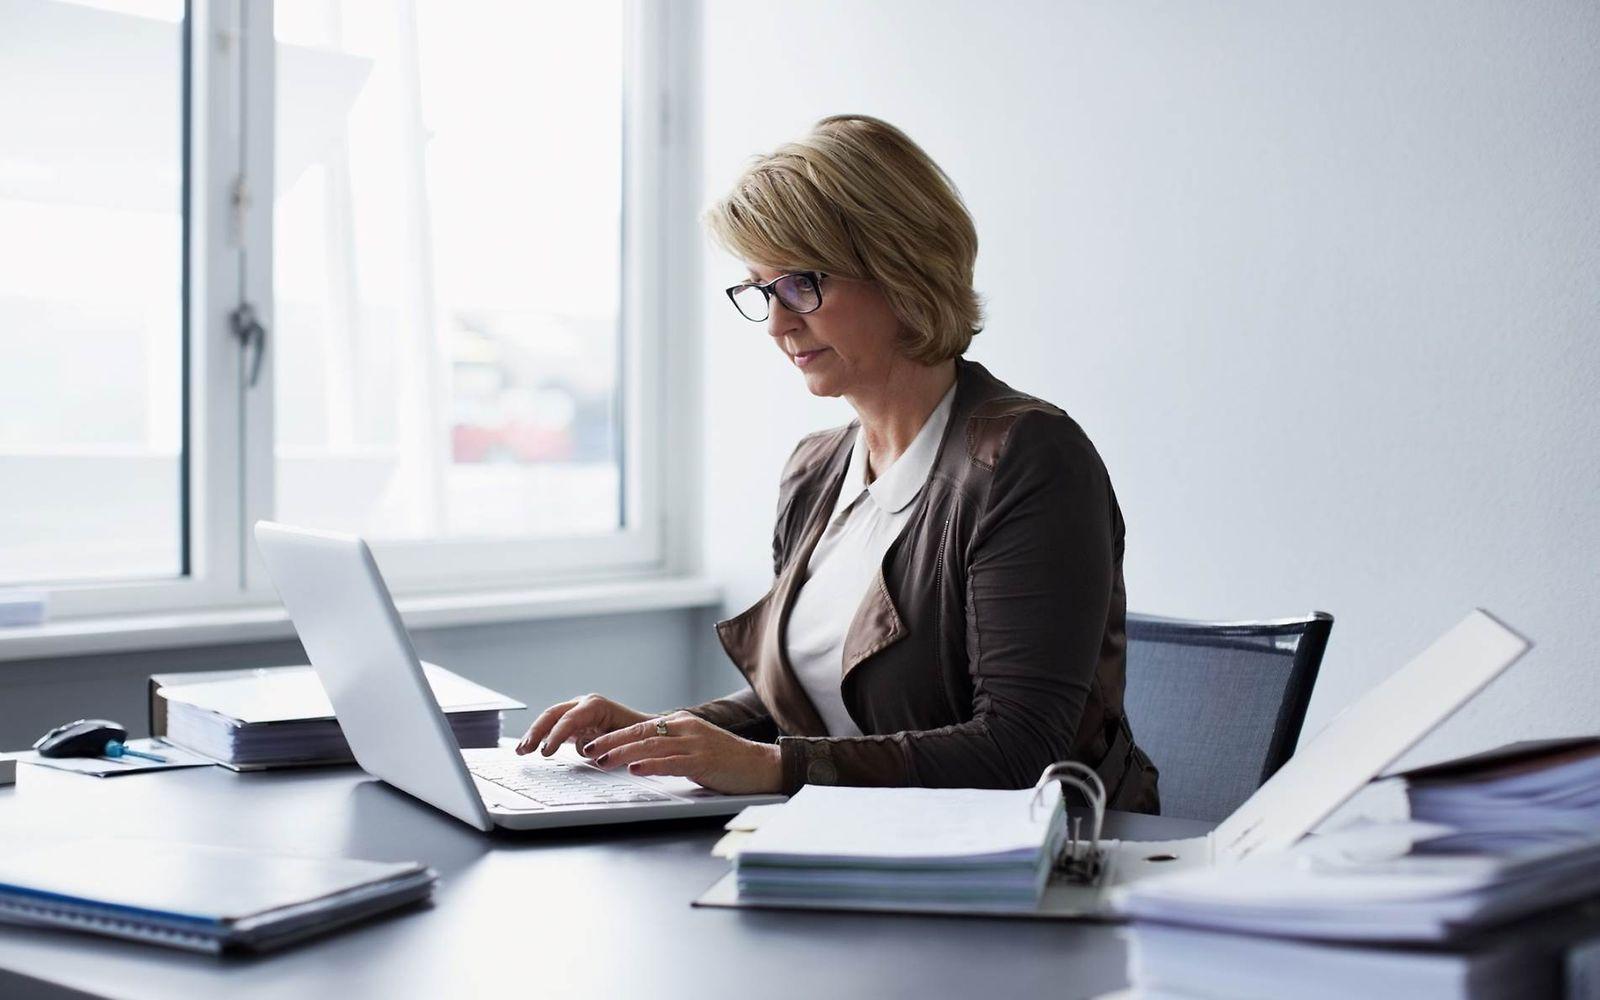 Bild: Frau mittleren Alters sitzt im Büro am Laptop und hat Akten neben sich.